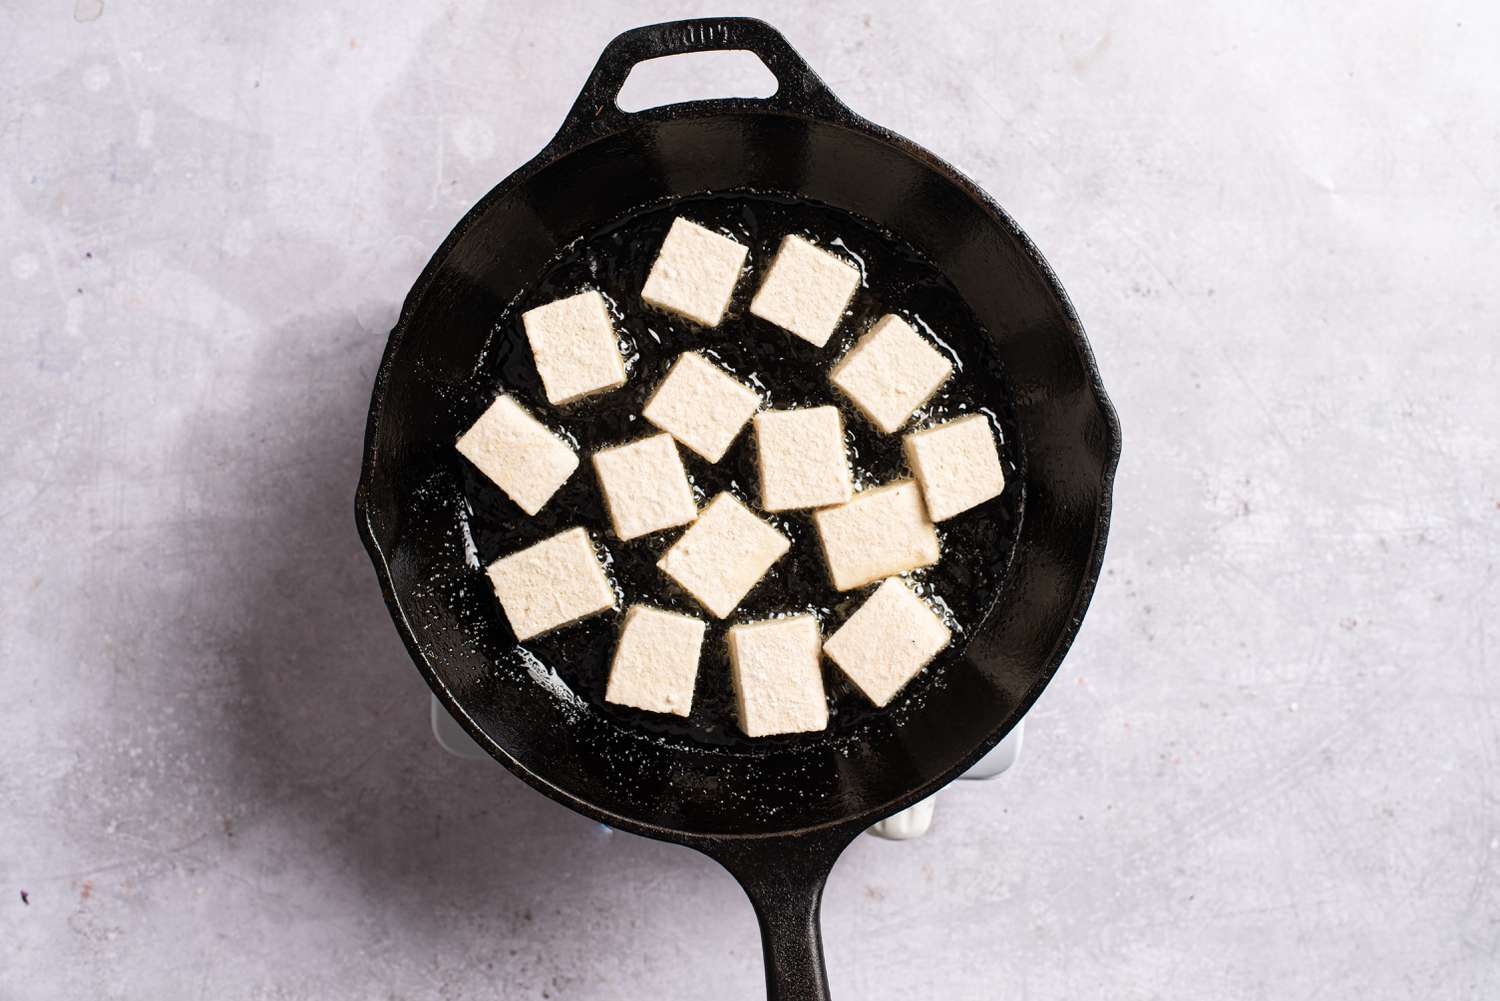 Tofu frying in a pan